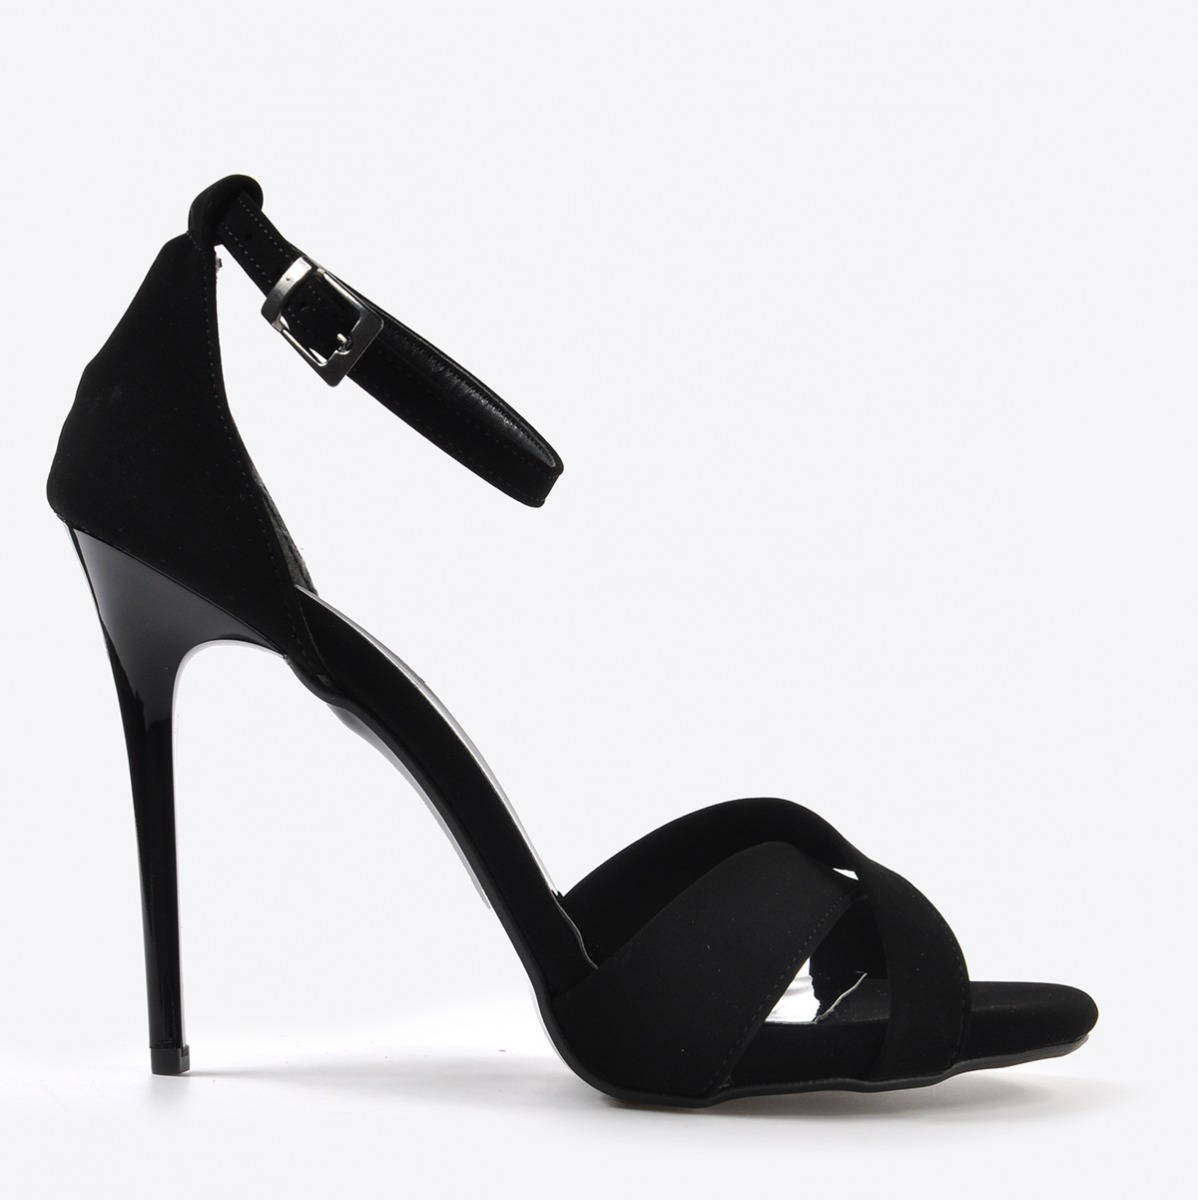 Flo Kadın  Siyah Süet Klasik Topuklu Ayakkabı VZN20-190Y. 2